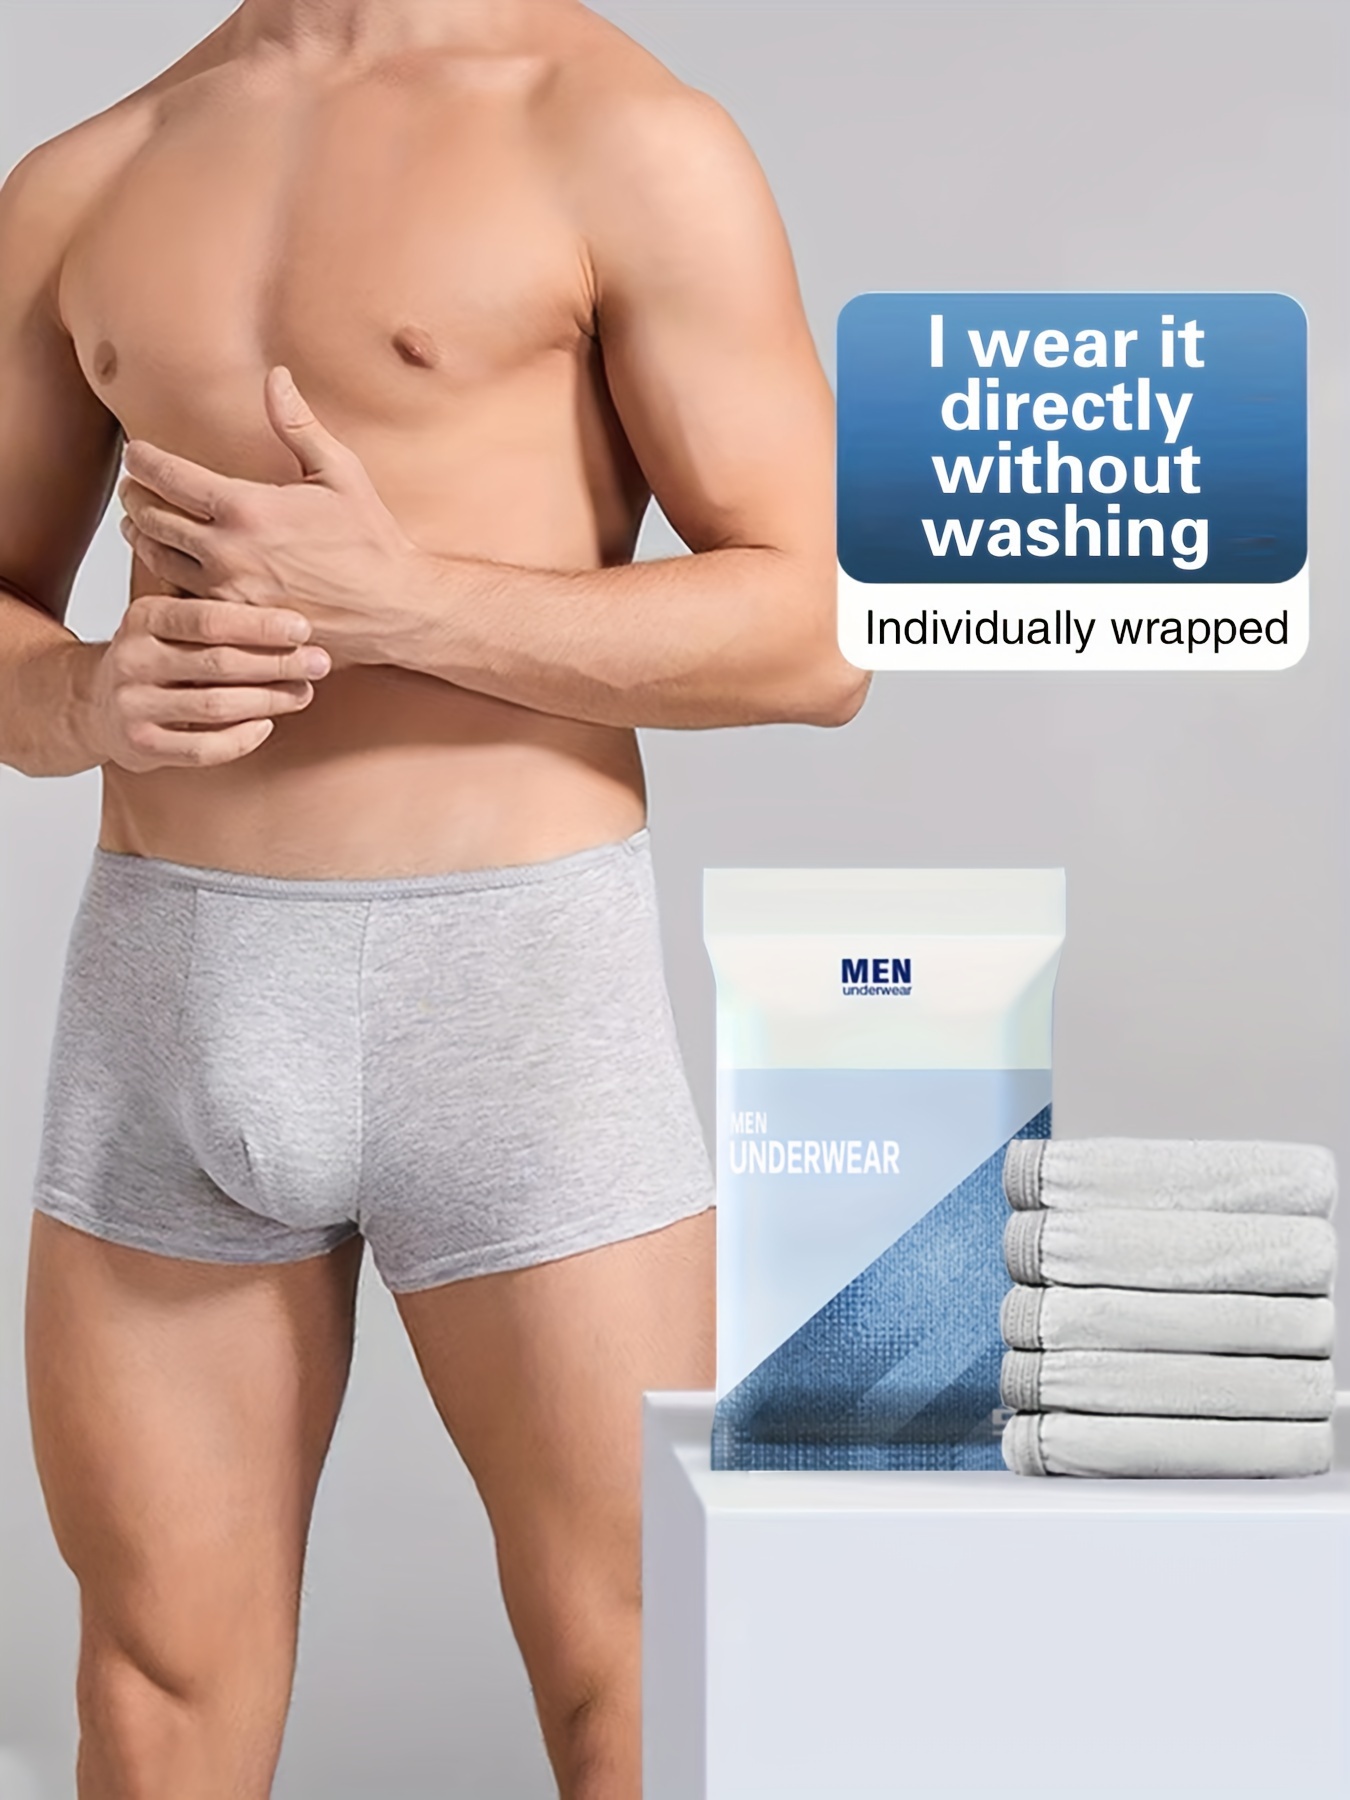 5pcs Women's Disposable Underwear, Portable Plus-size Short Bottoms For  Travel Or Emergencies